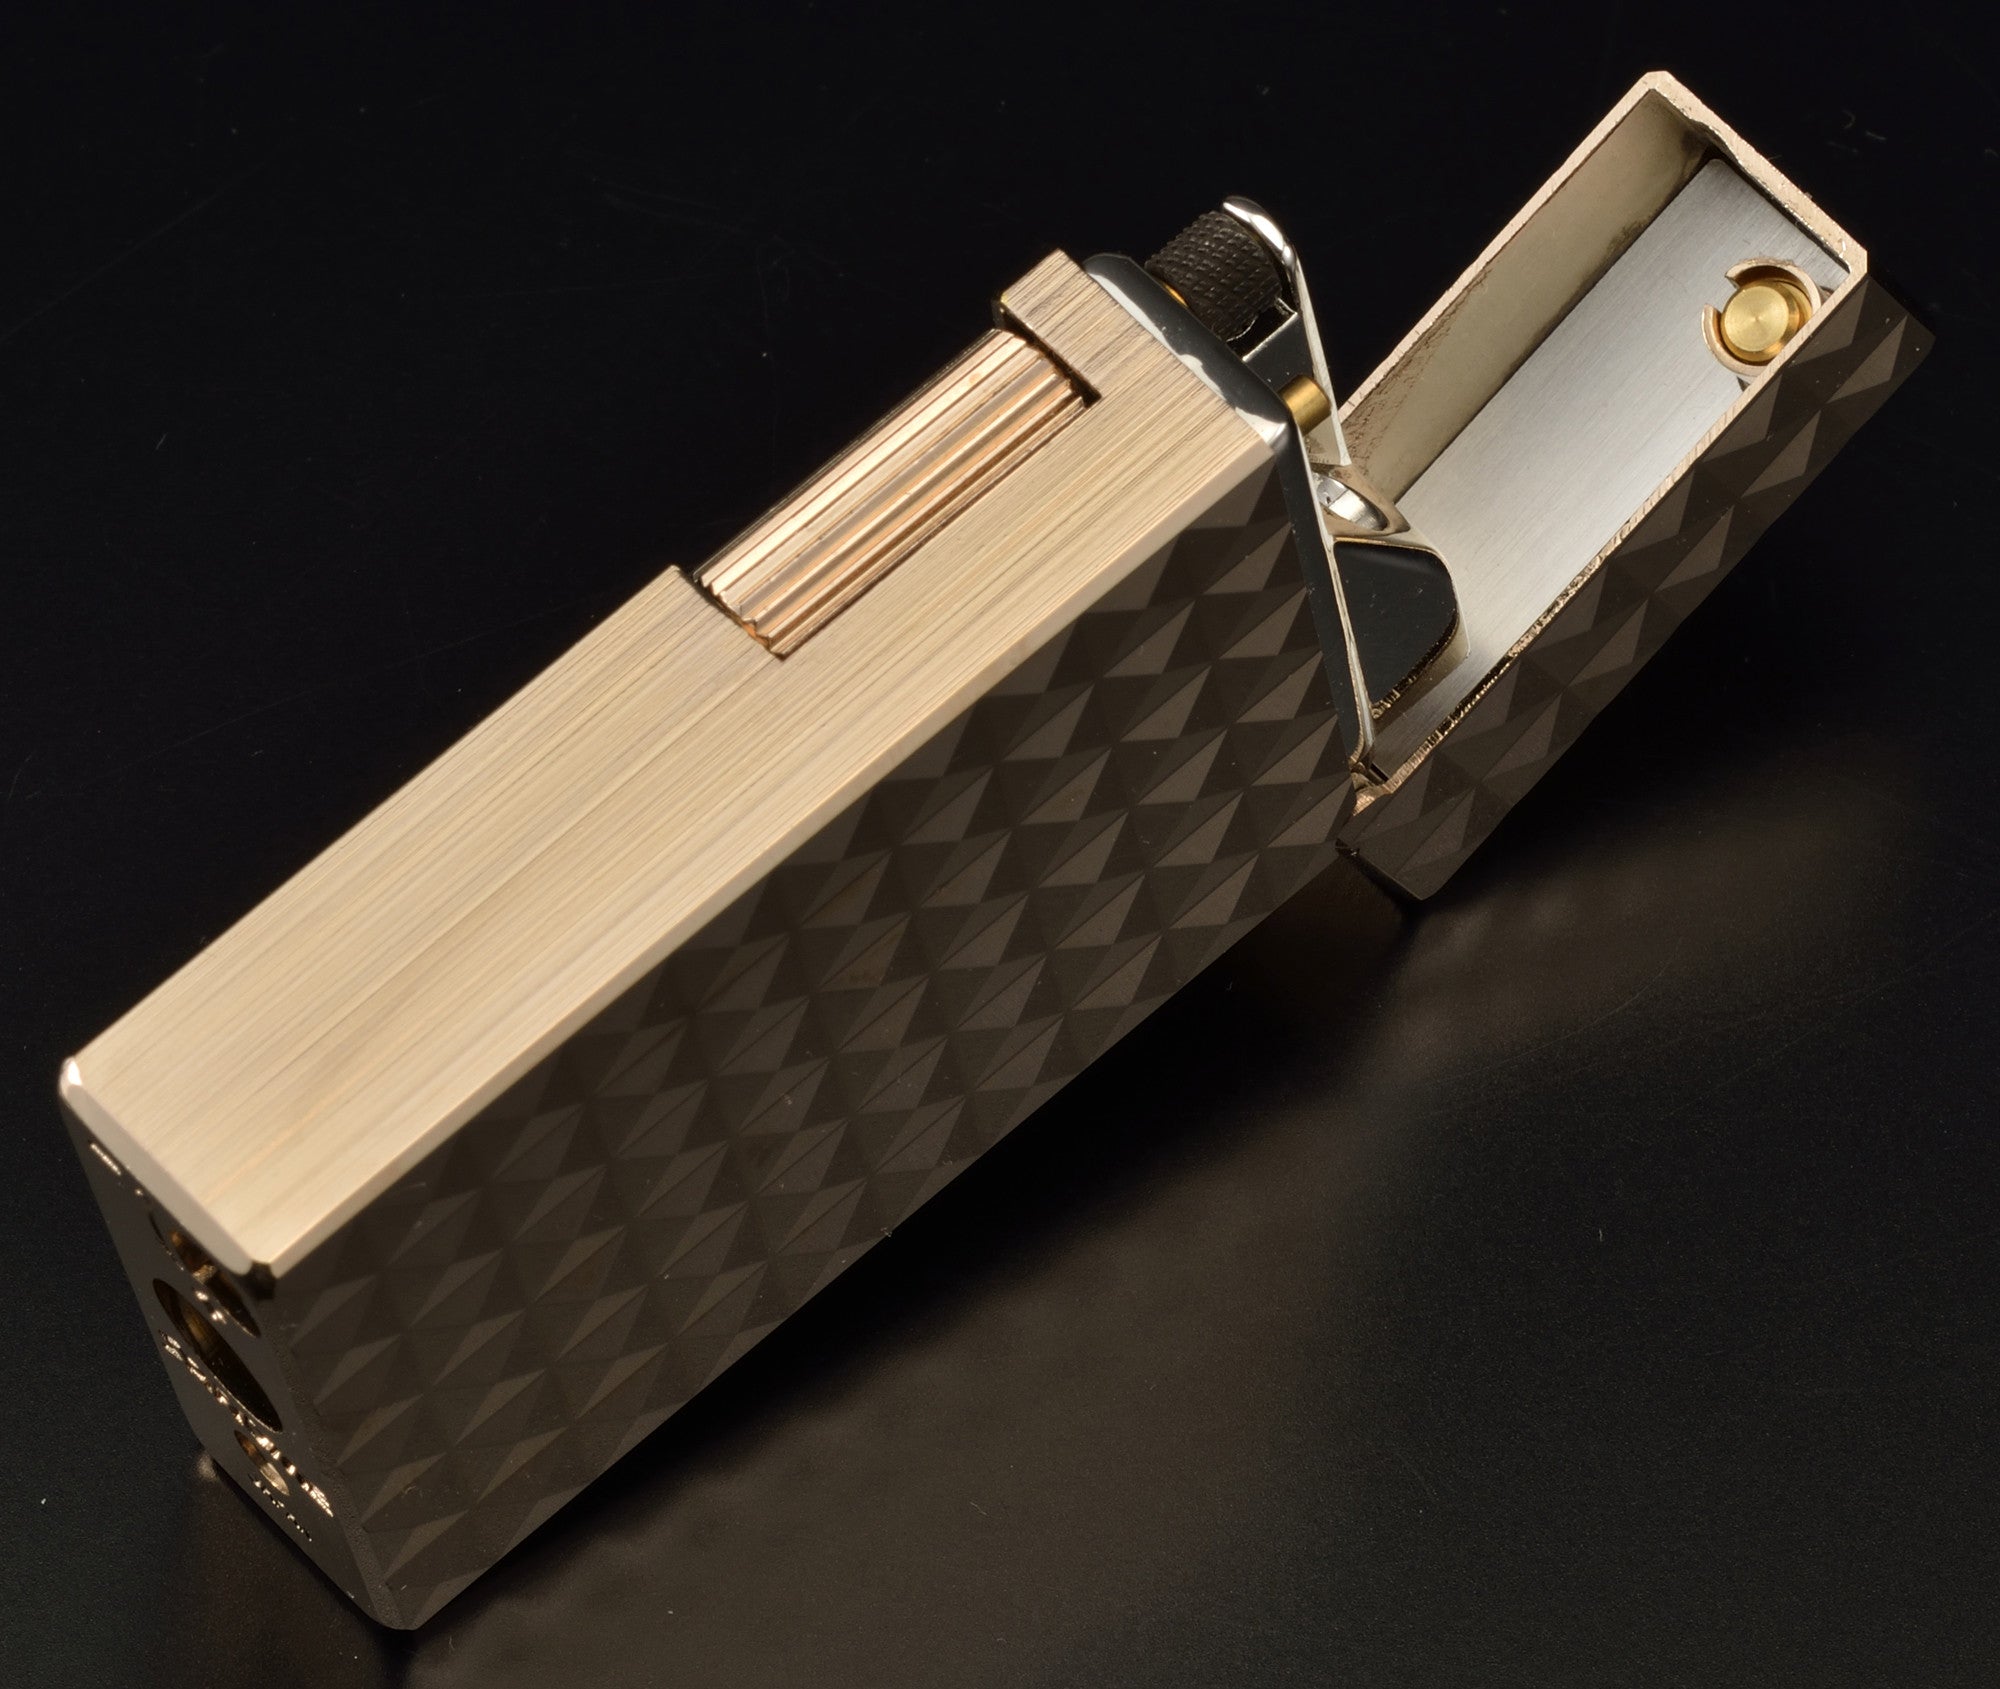 Sarome Flint Cigarette Lighter Sterling Silver / 5-side arabesque SD1-55